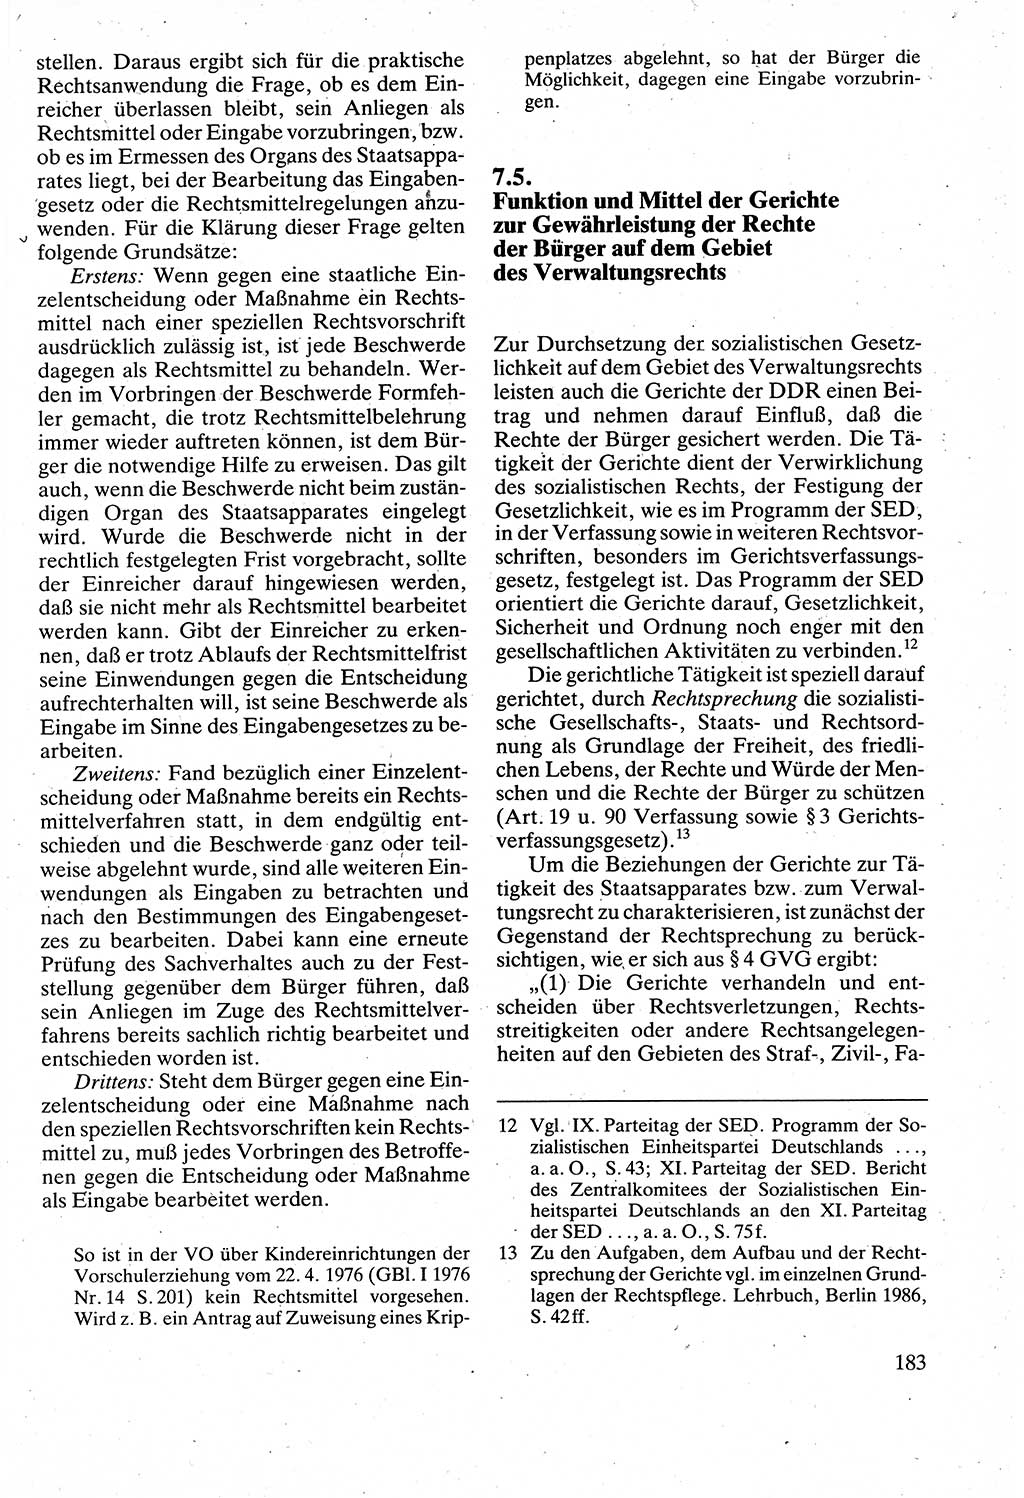 Verwaltungsrecht [Deutsche Demokratische Republik (DDR)], Lehrbuch 1988, Seite 183 (Verw.-R. DDR Lb. 1988, S. 183)